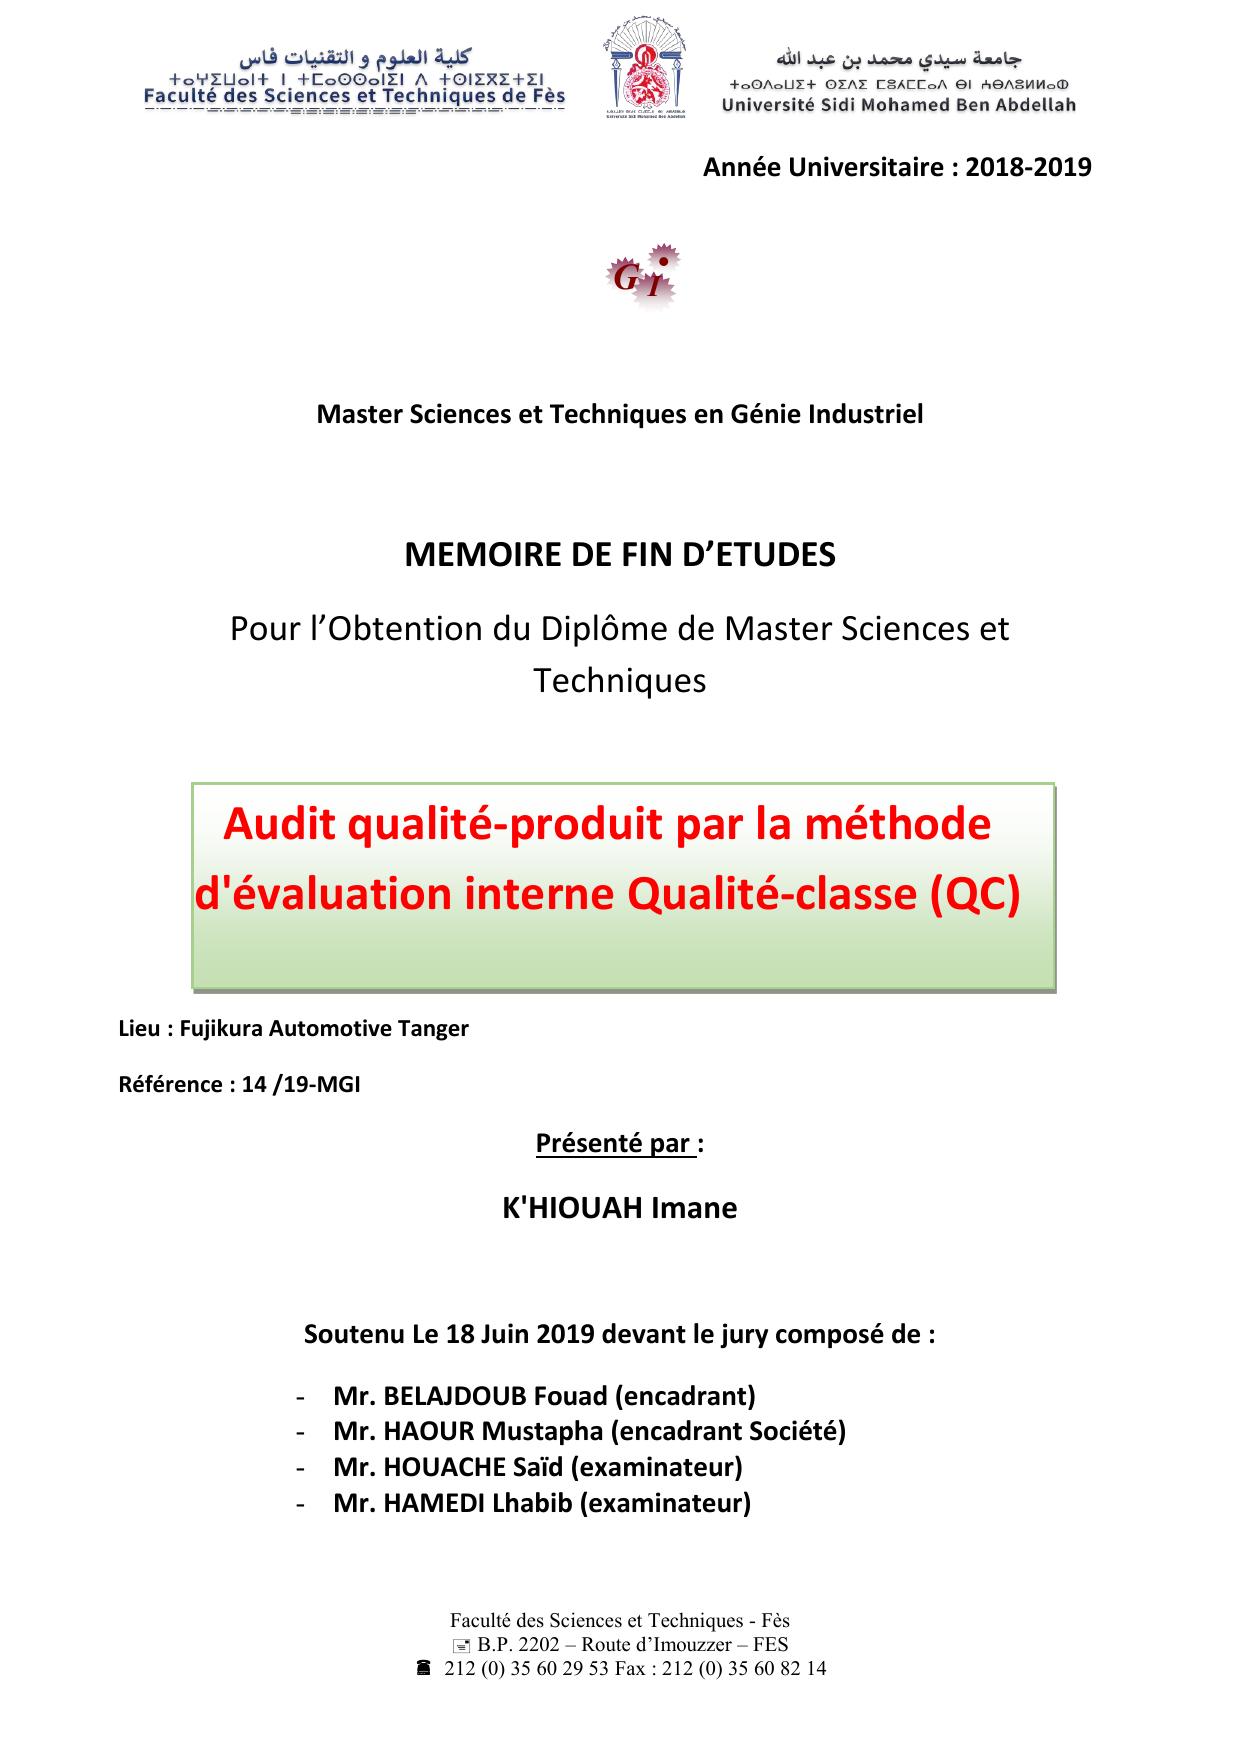 Audit qualité-produit par la méthode d'évaluation interne Qualité-classe (QC)